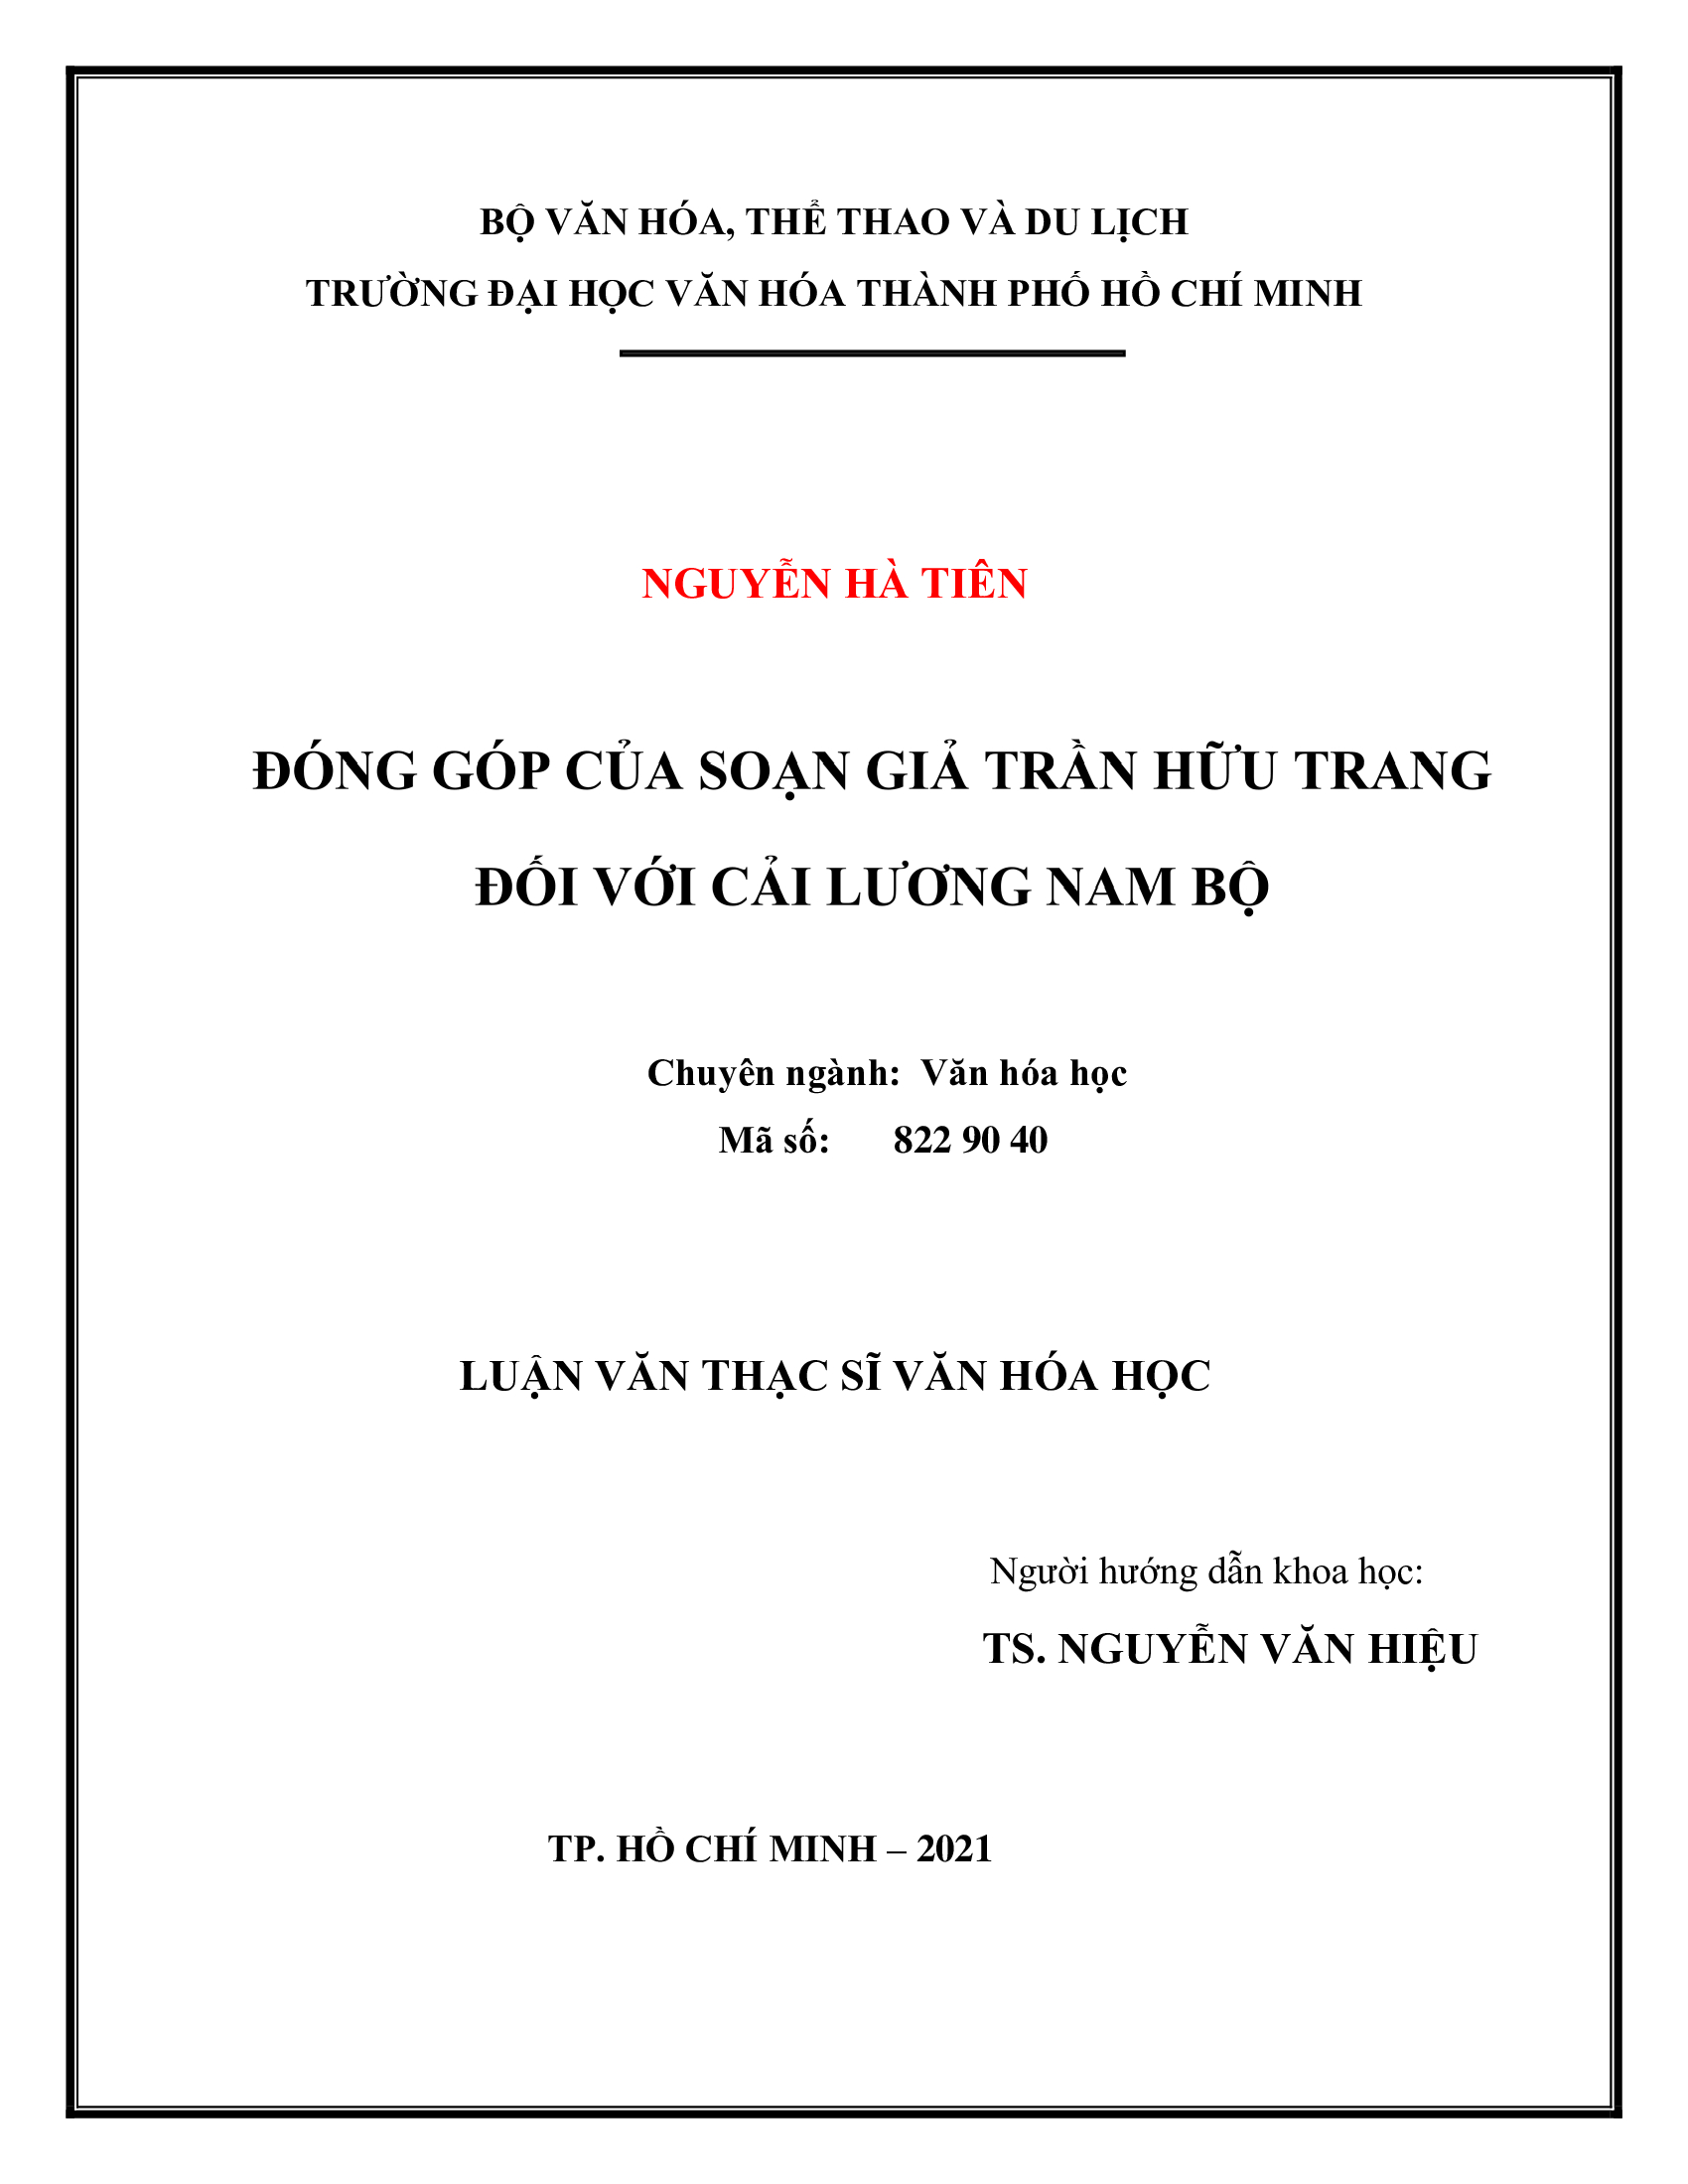 Đóng góp của soạn giả Trần Hữu Trang đối với cải lương Nam Bộ